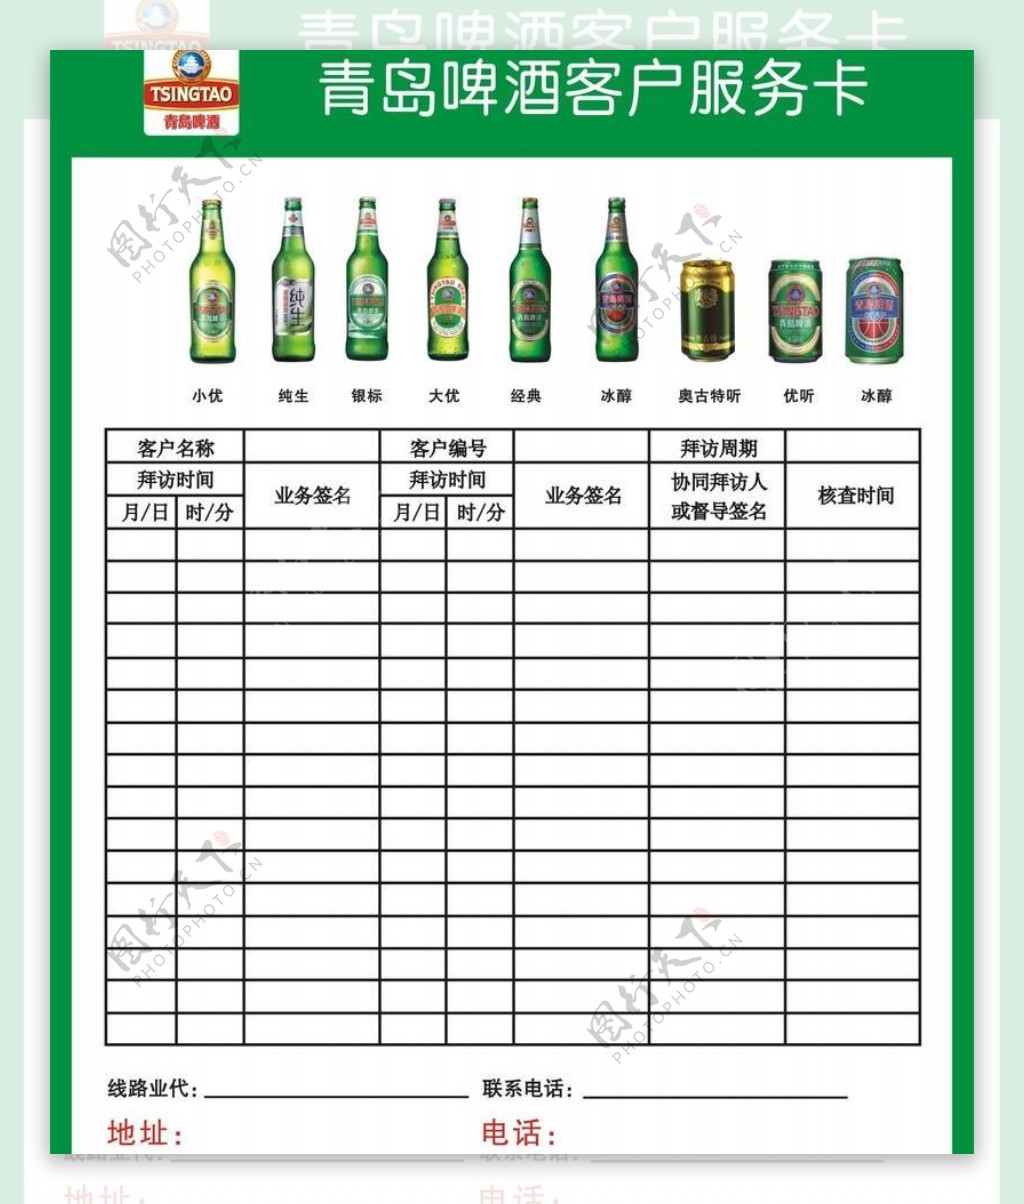 青岛啤酒客户服务卡矢图片